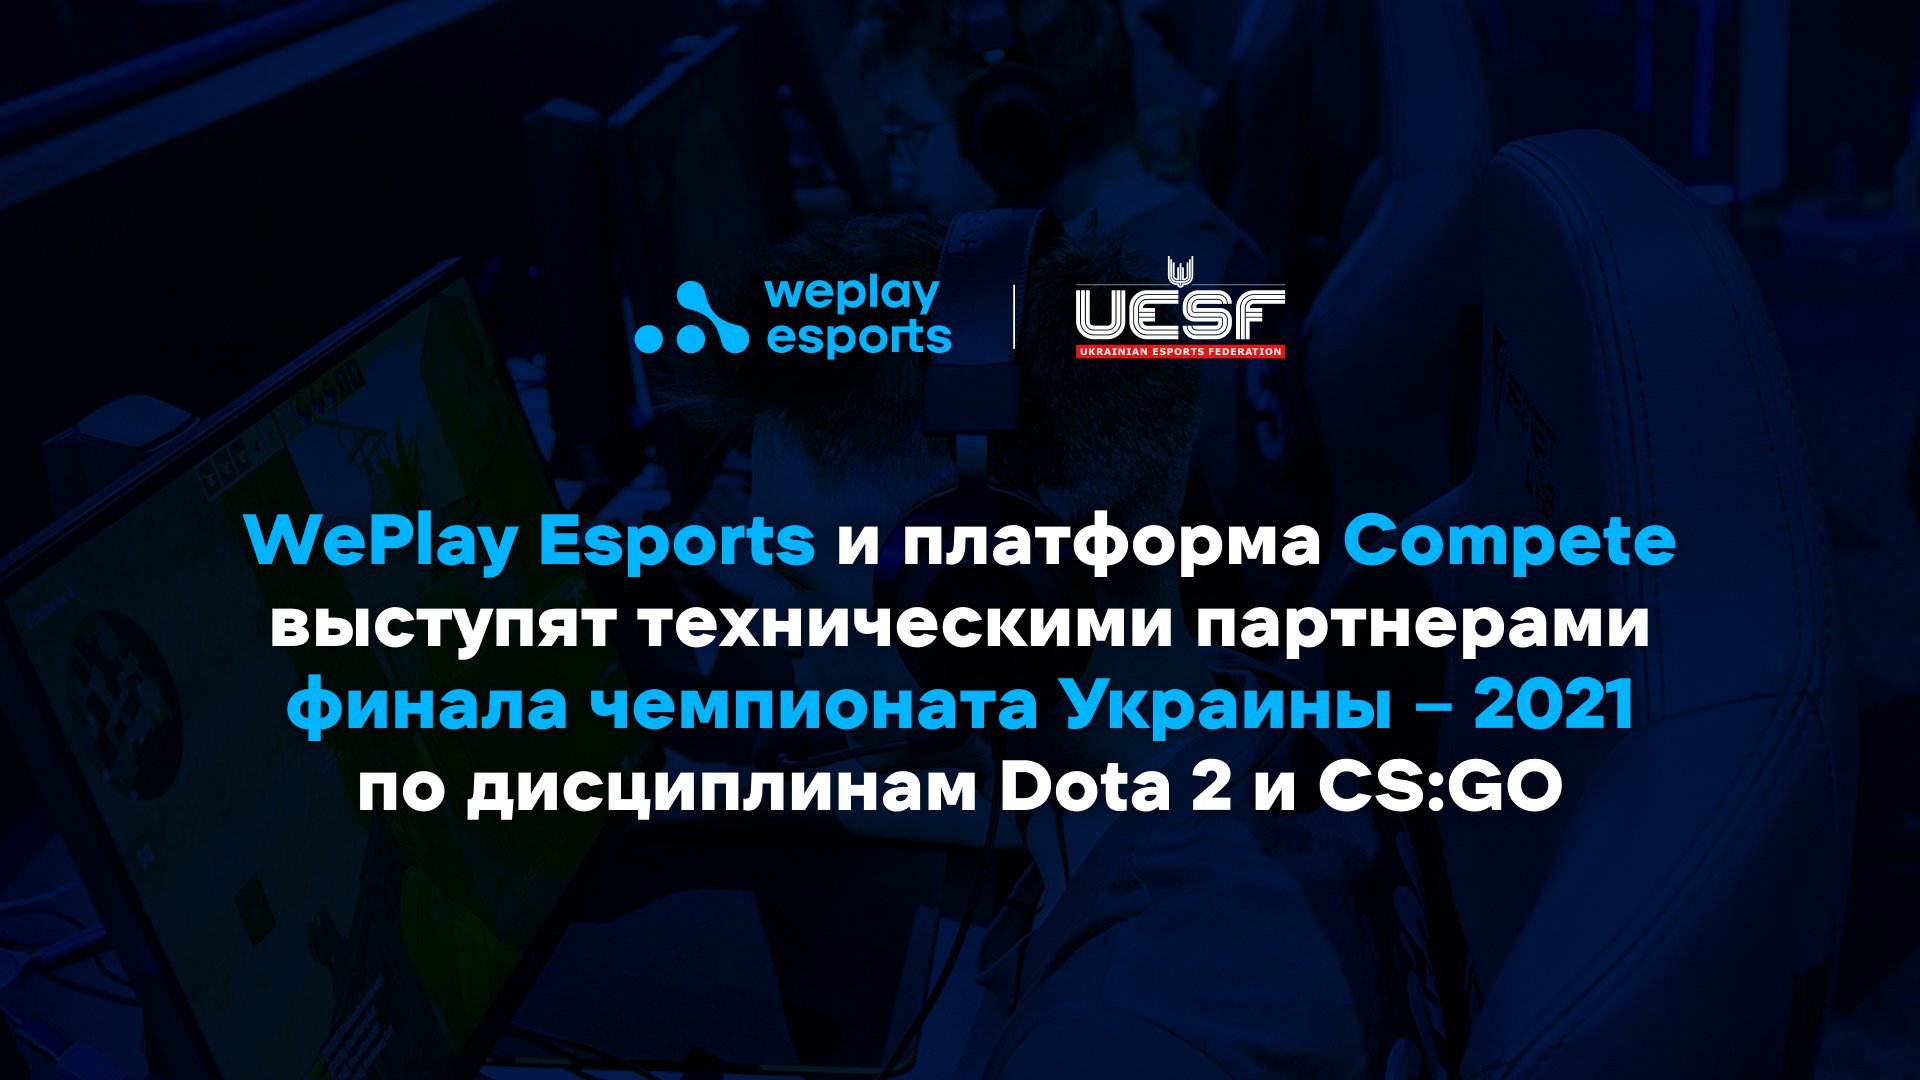 WePlay Esports и платформа Compete выступят техническими партнерами финала чемпионата Украины – 2021 по дисциплинам Dota 2 и CS:GO. Изображение: WePlay Holding